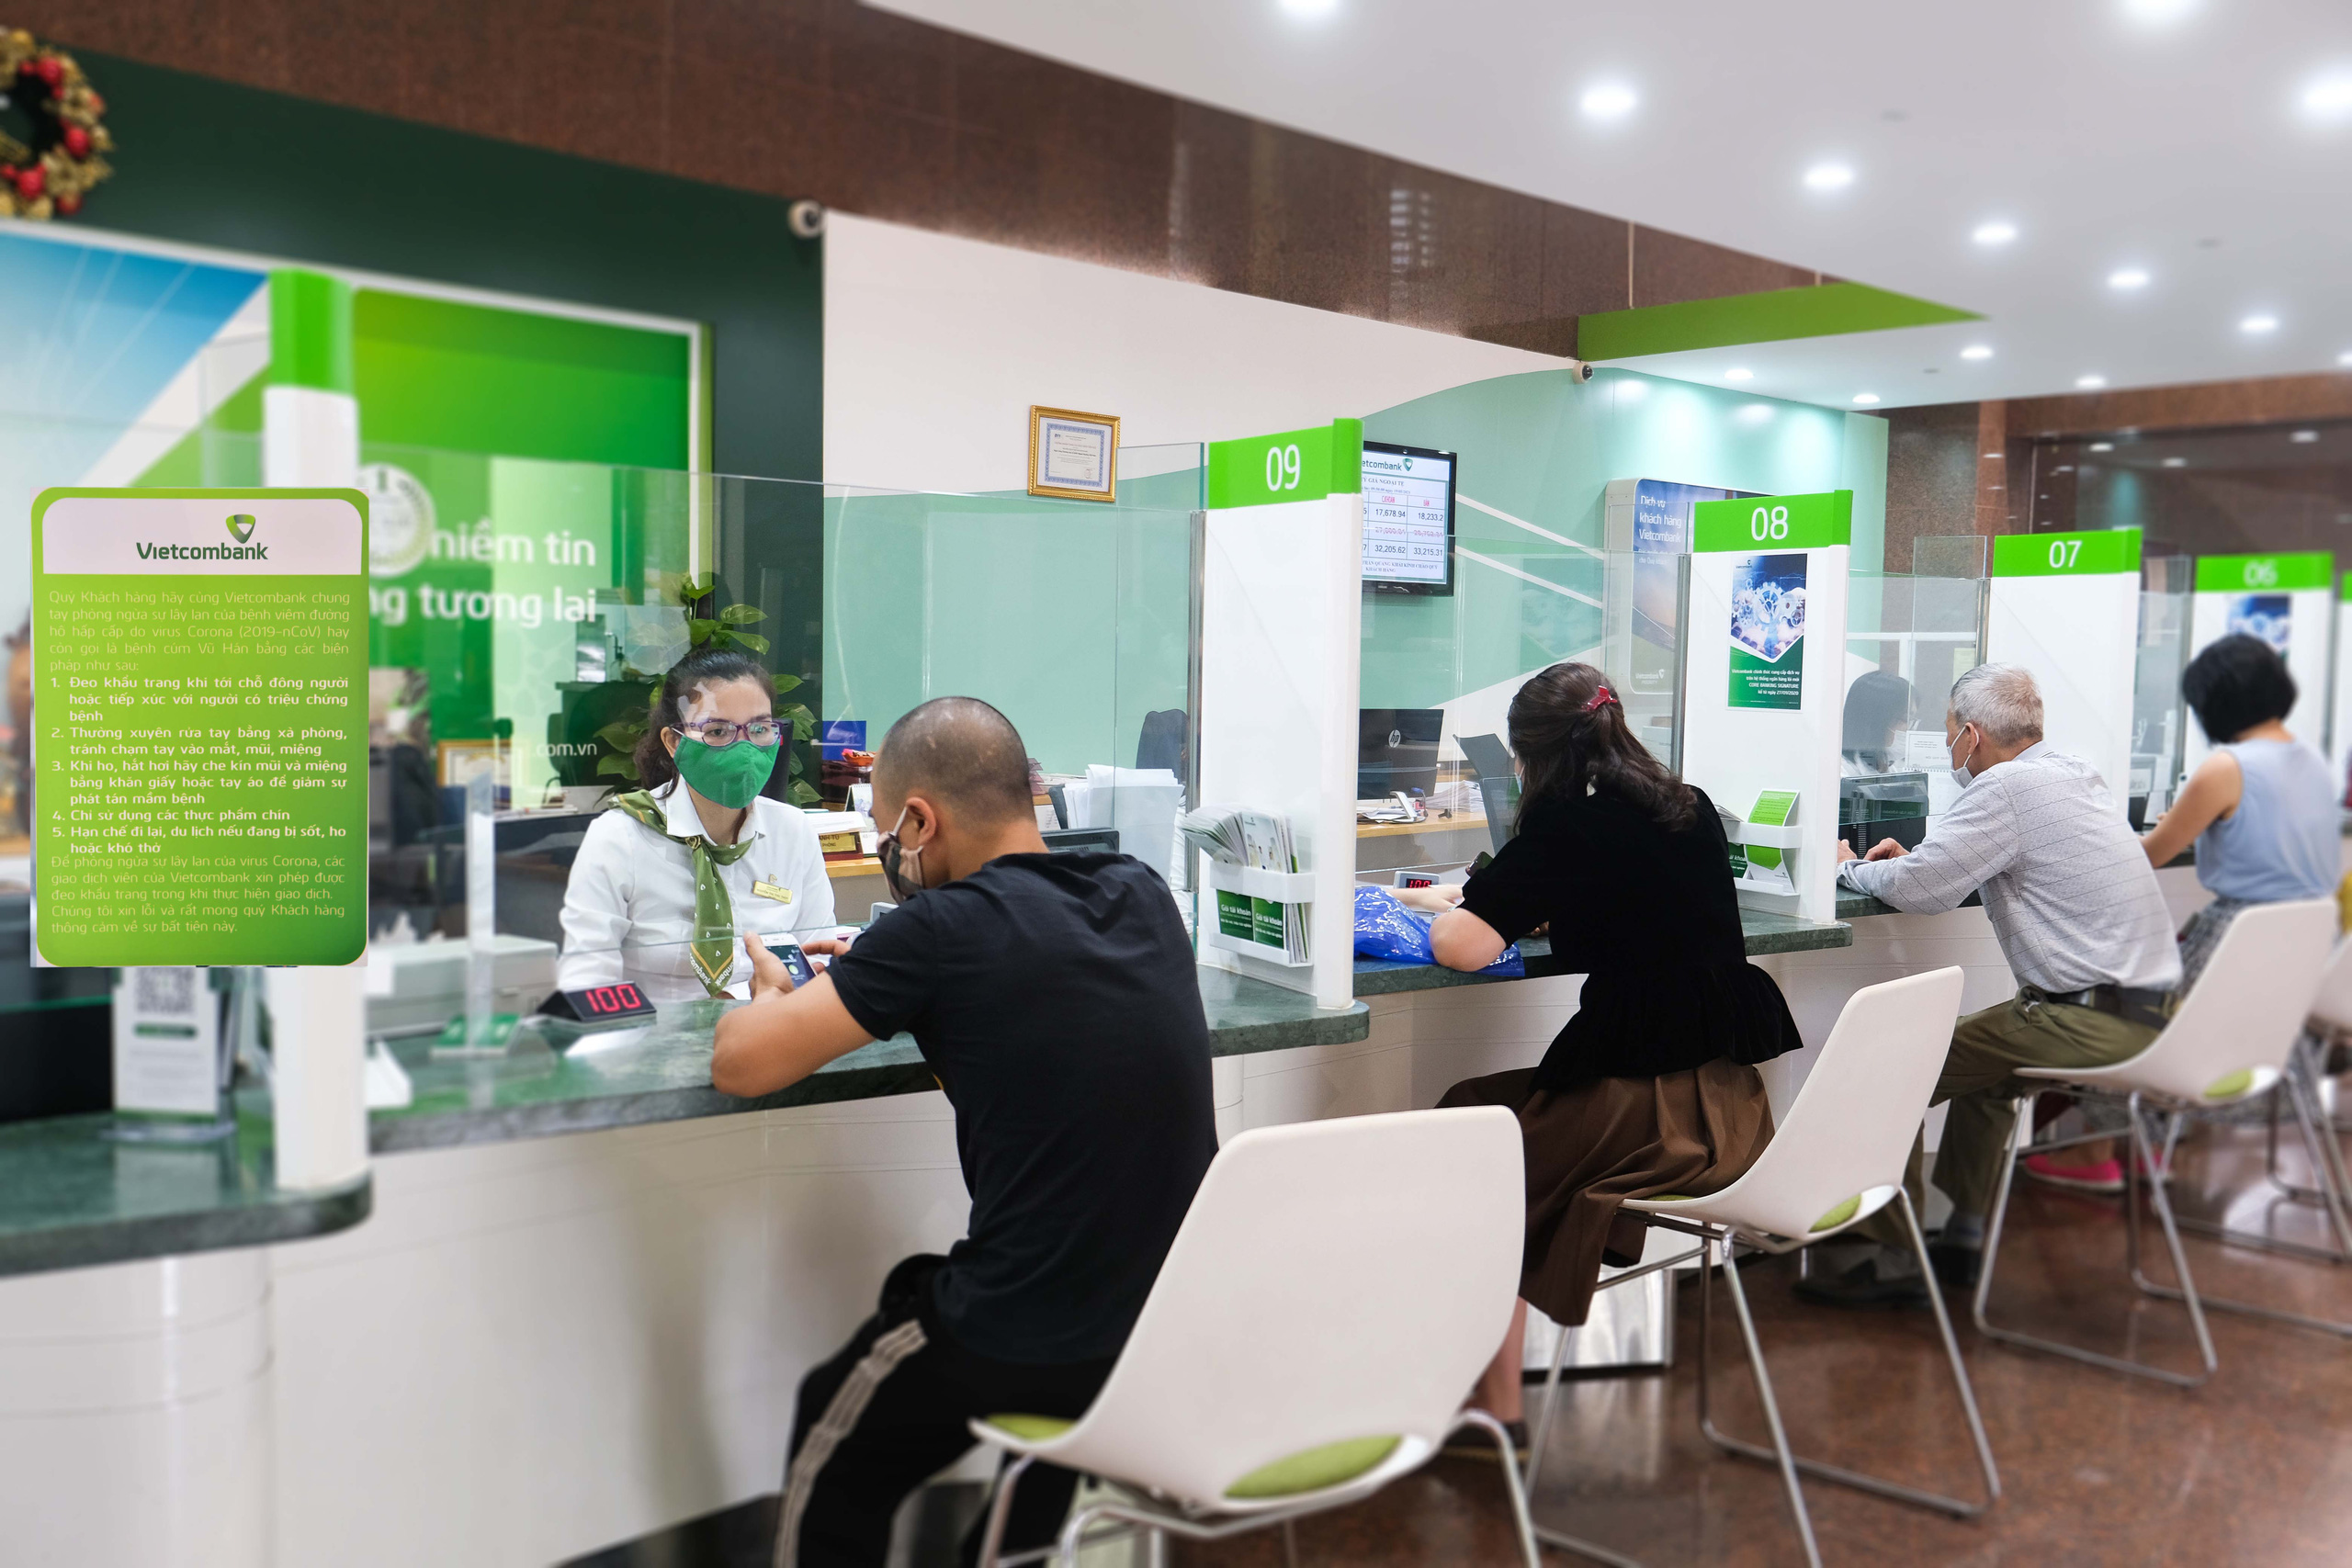 Vietcombank giảm lãi suất tiền vay và phí hỗ trợ khách hàng tại hai tỉnh Bắc Giang và Bắc Ninh - Ảnh 2.